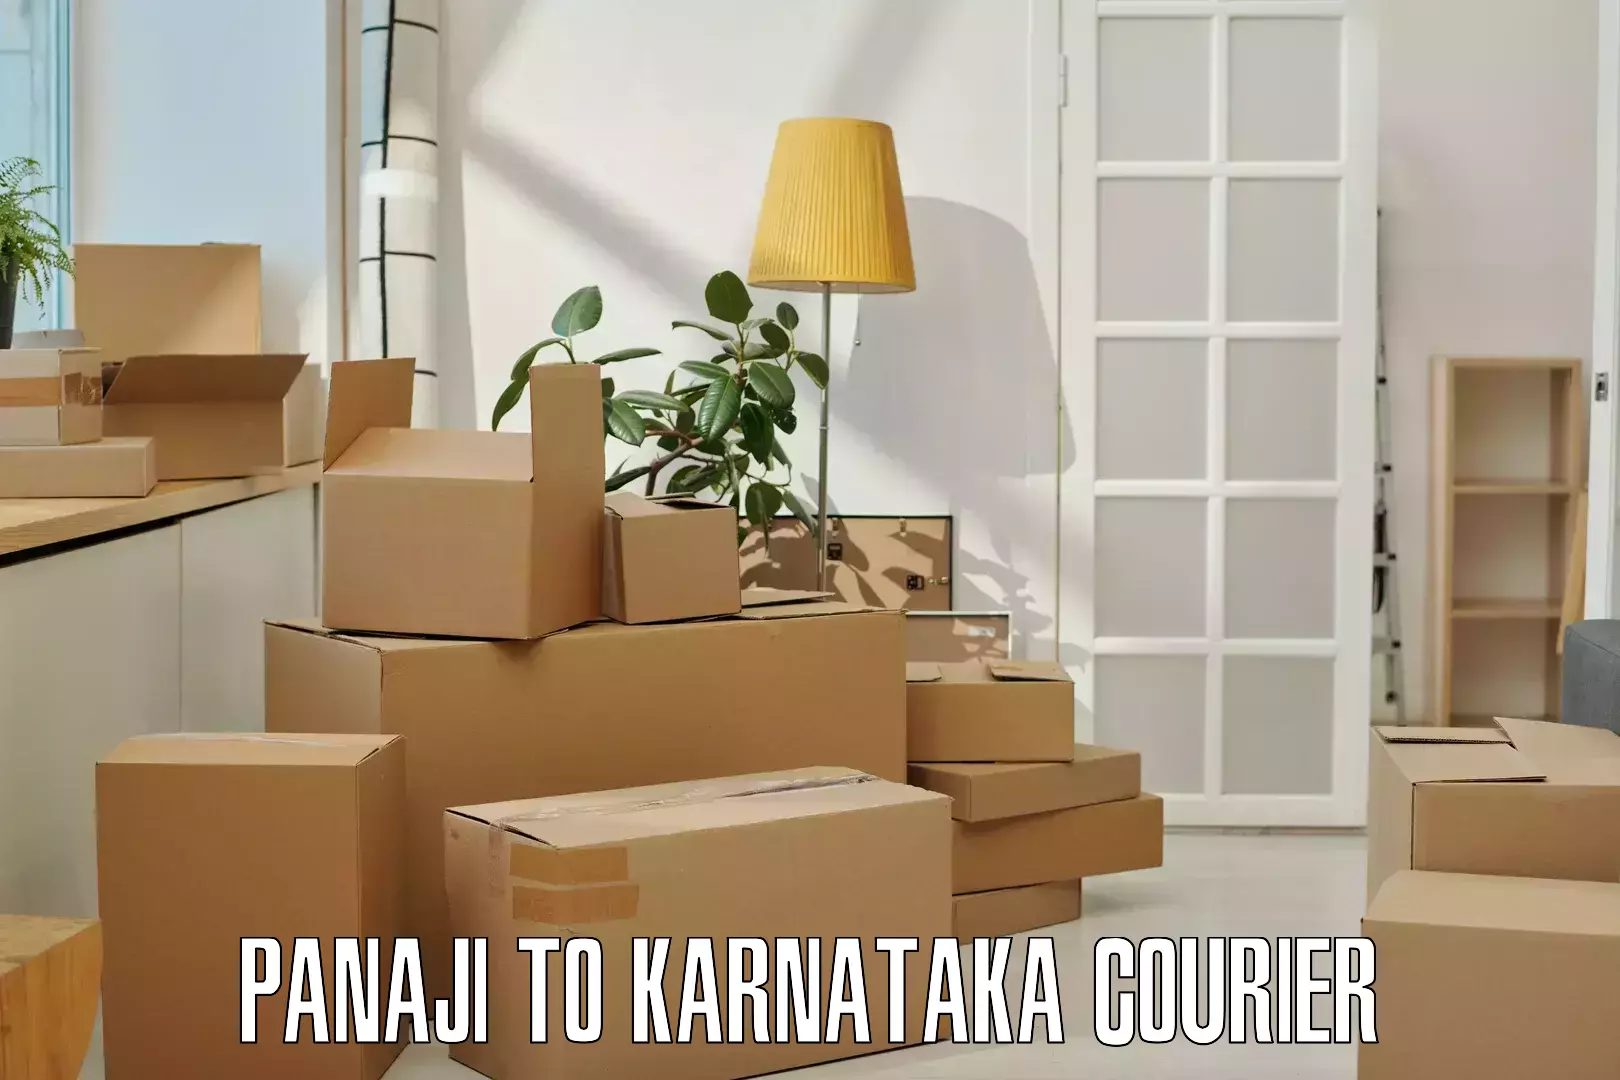 Nationwide shipping coverage Panaji to Kodagu